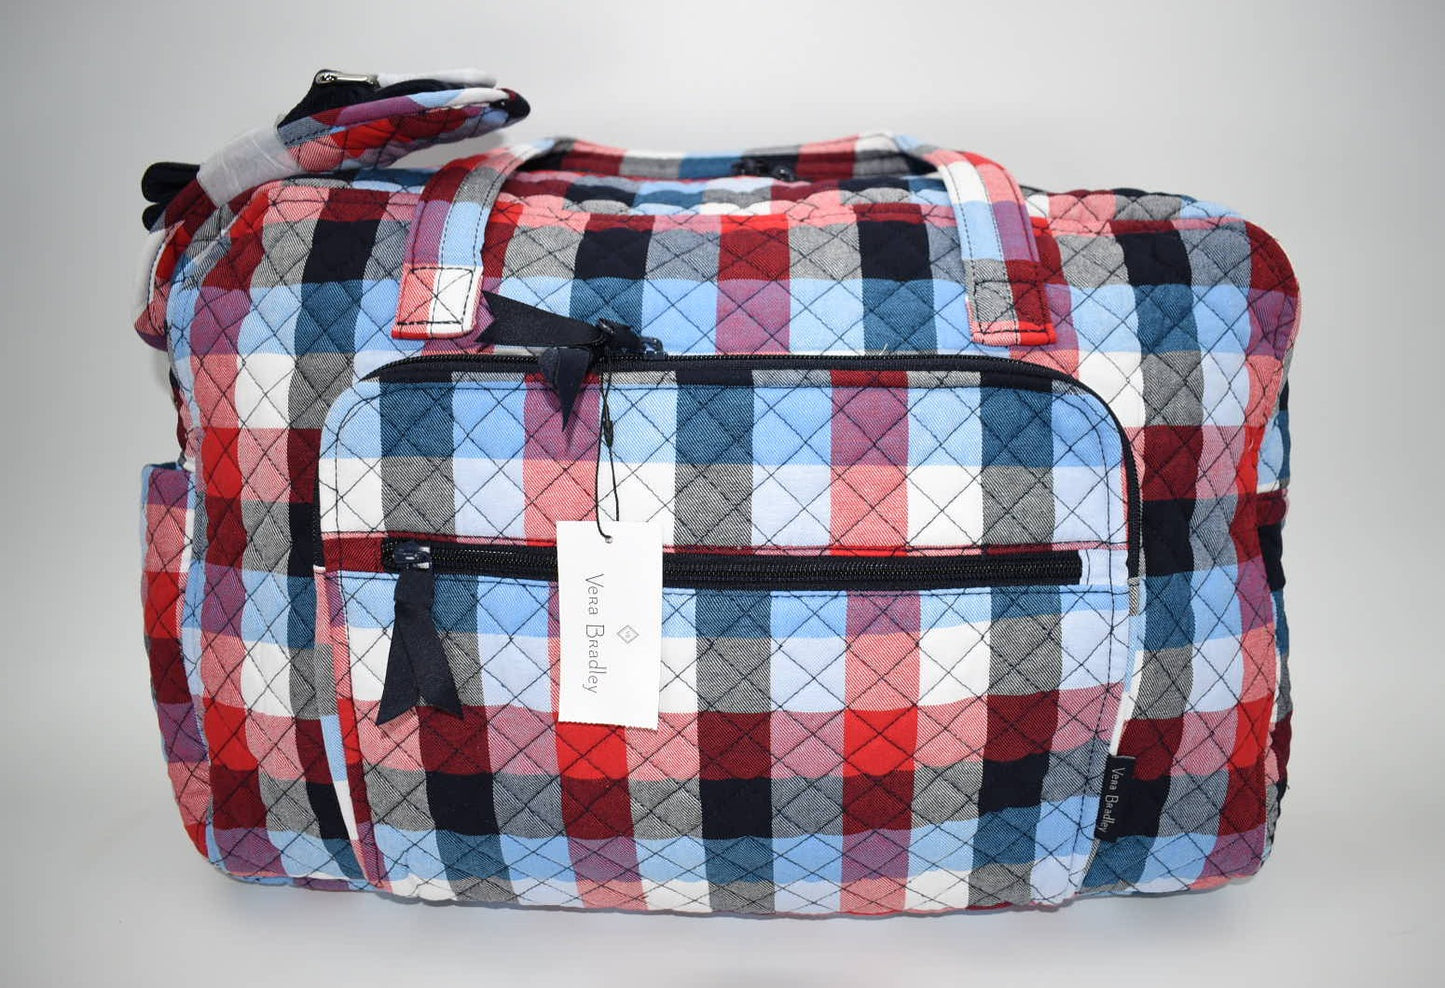 Vera Bradley Weekender Travel Bag in "Patriotic Plaid" Pattern